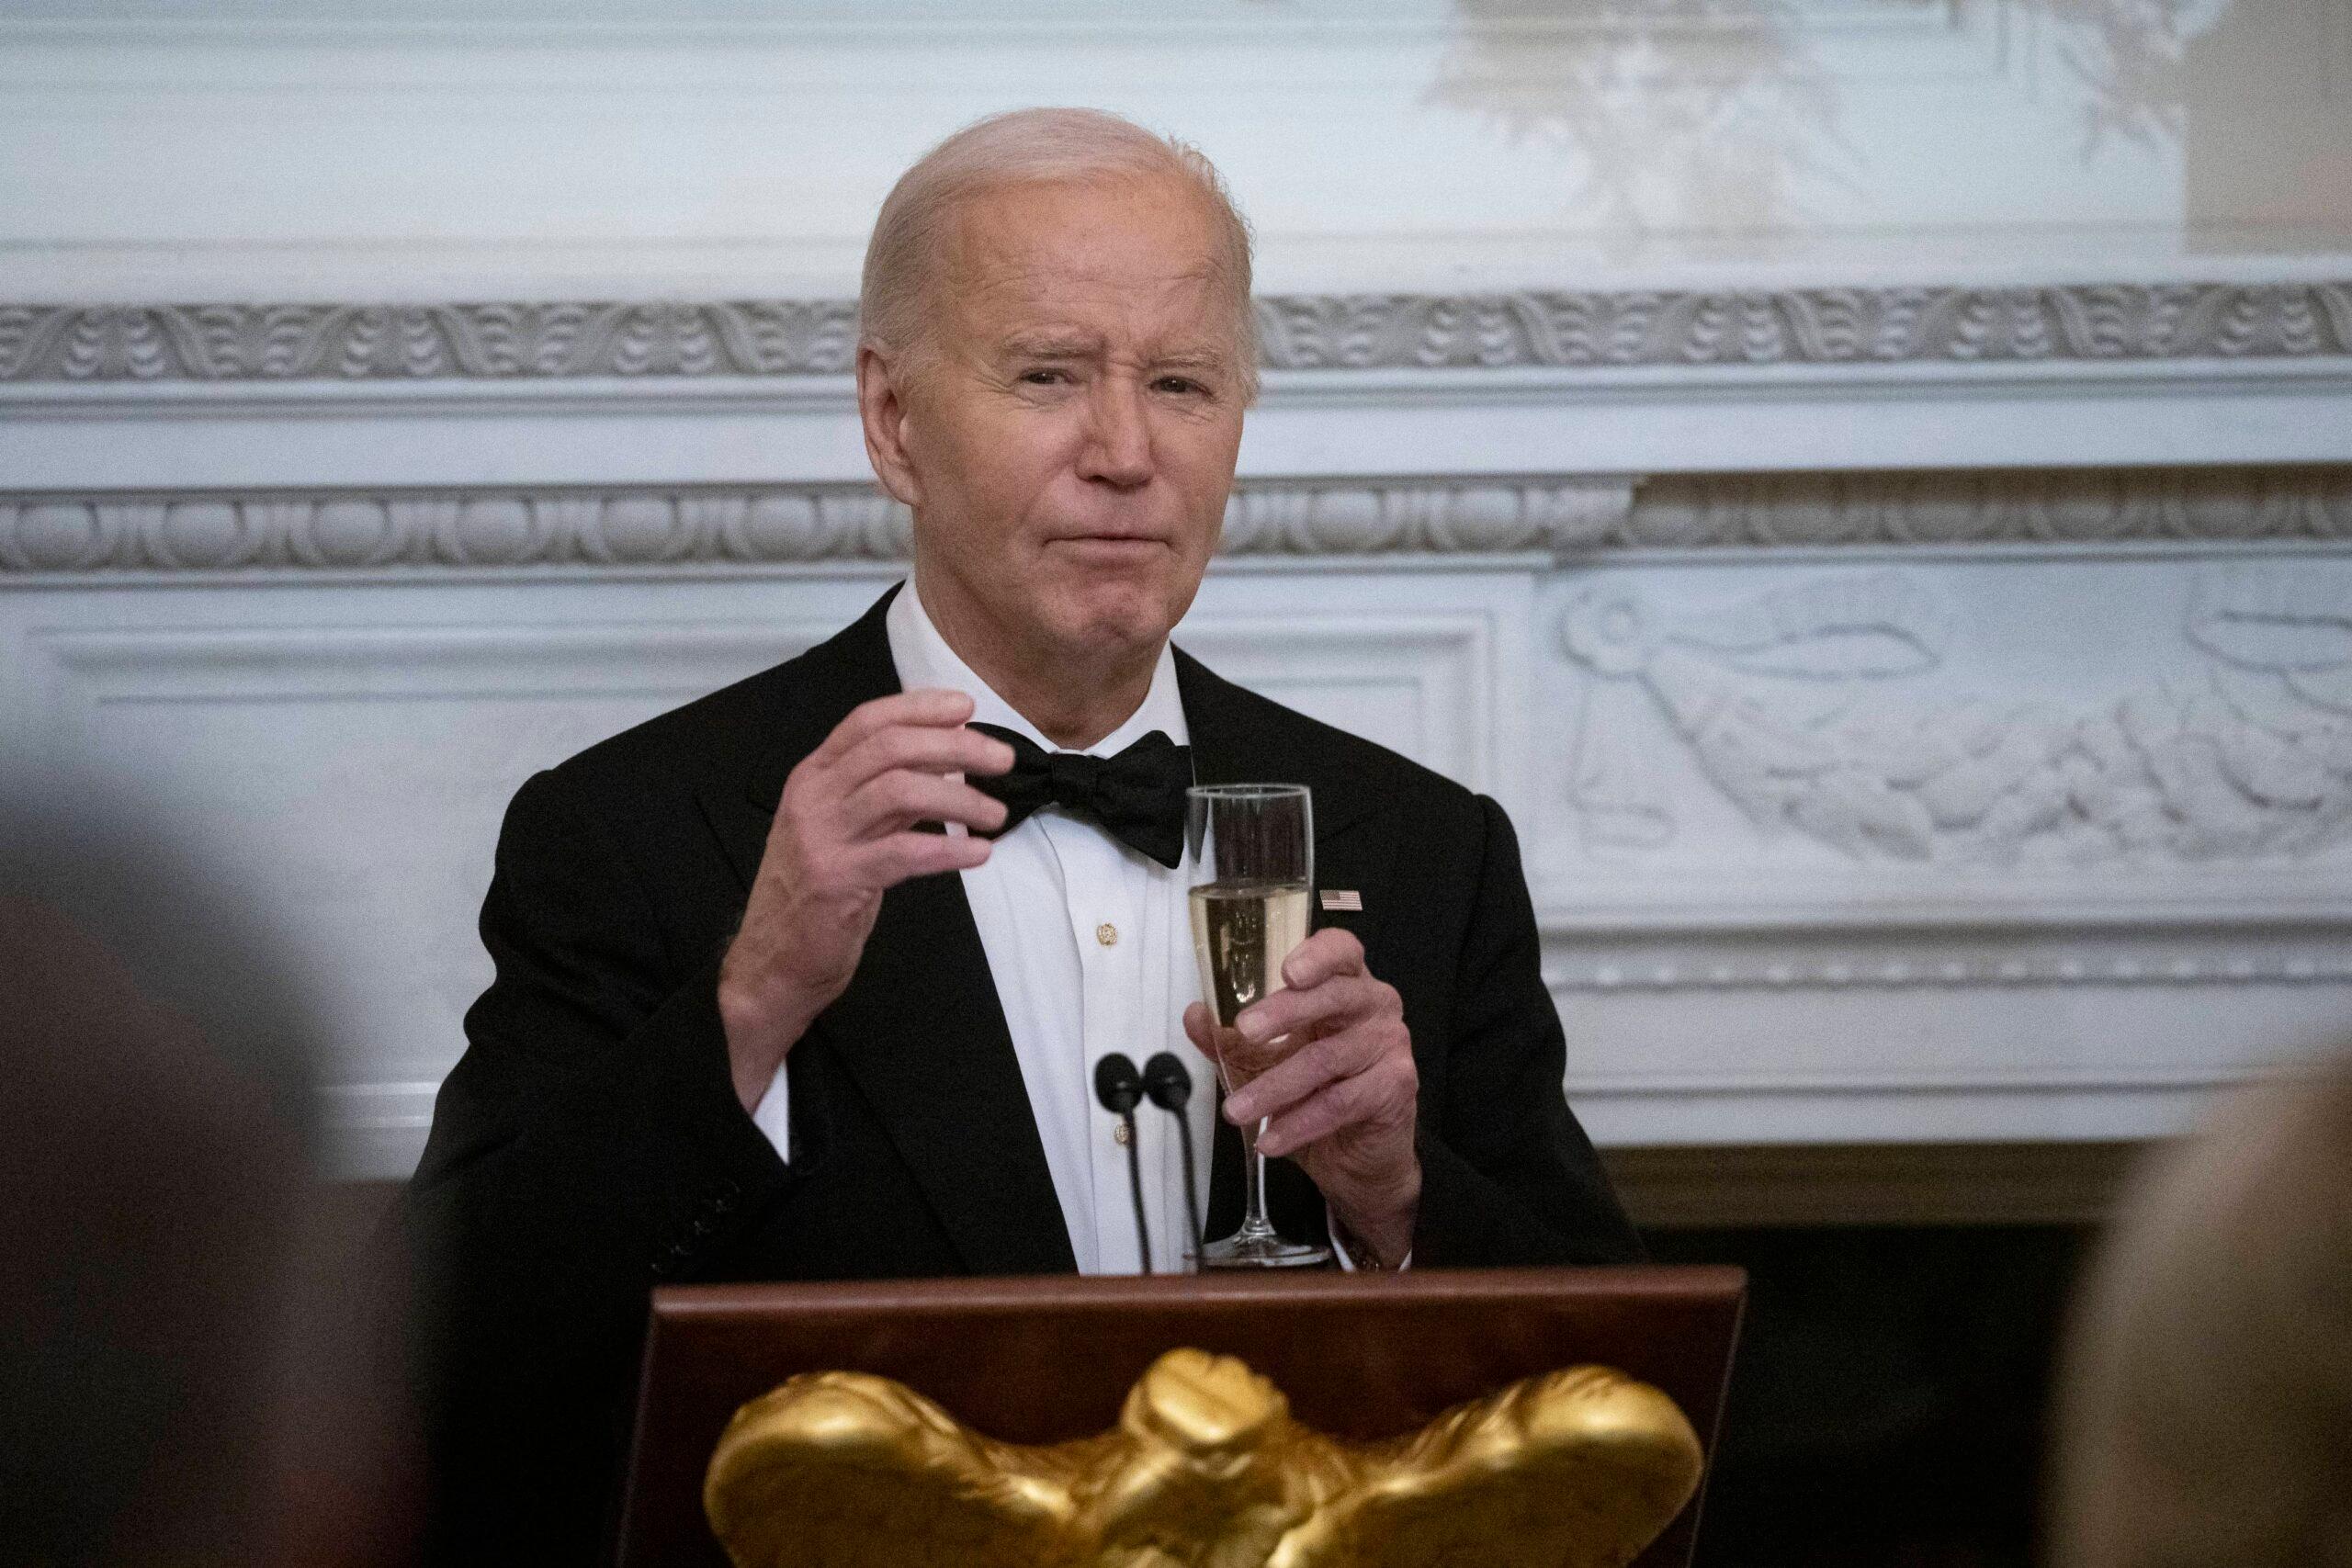 Joe Biden anuncia que está fazendo um exame físico em meio a preocupações de saúde mental